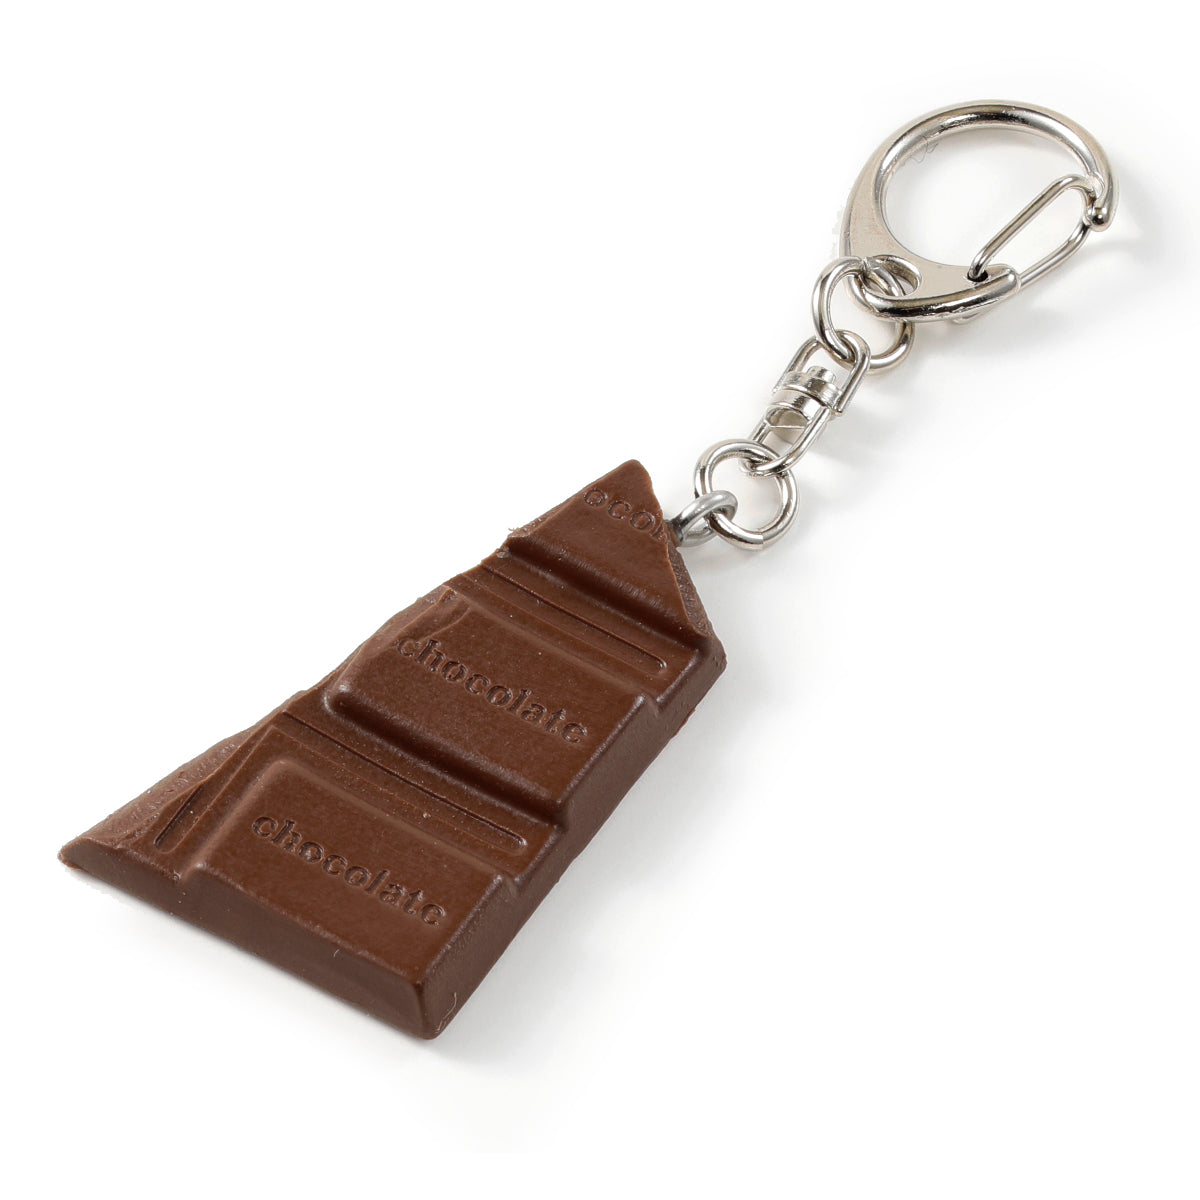  食品サンプル(IWASAKI)「板チョコのキーリング 」の商品画像です。